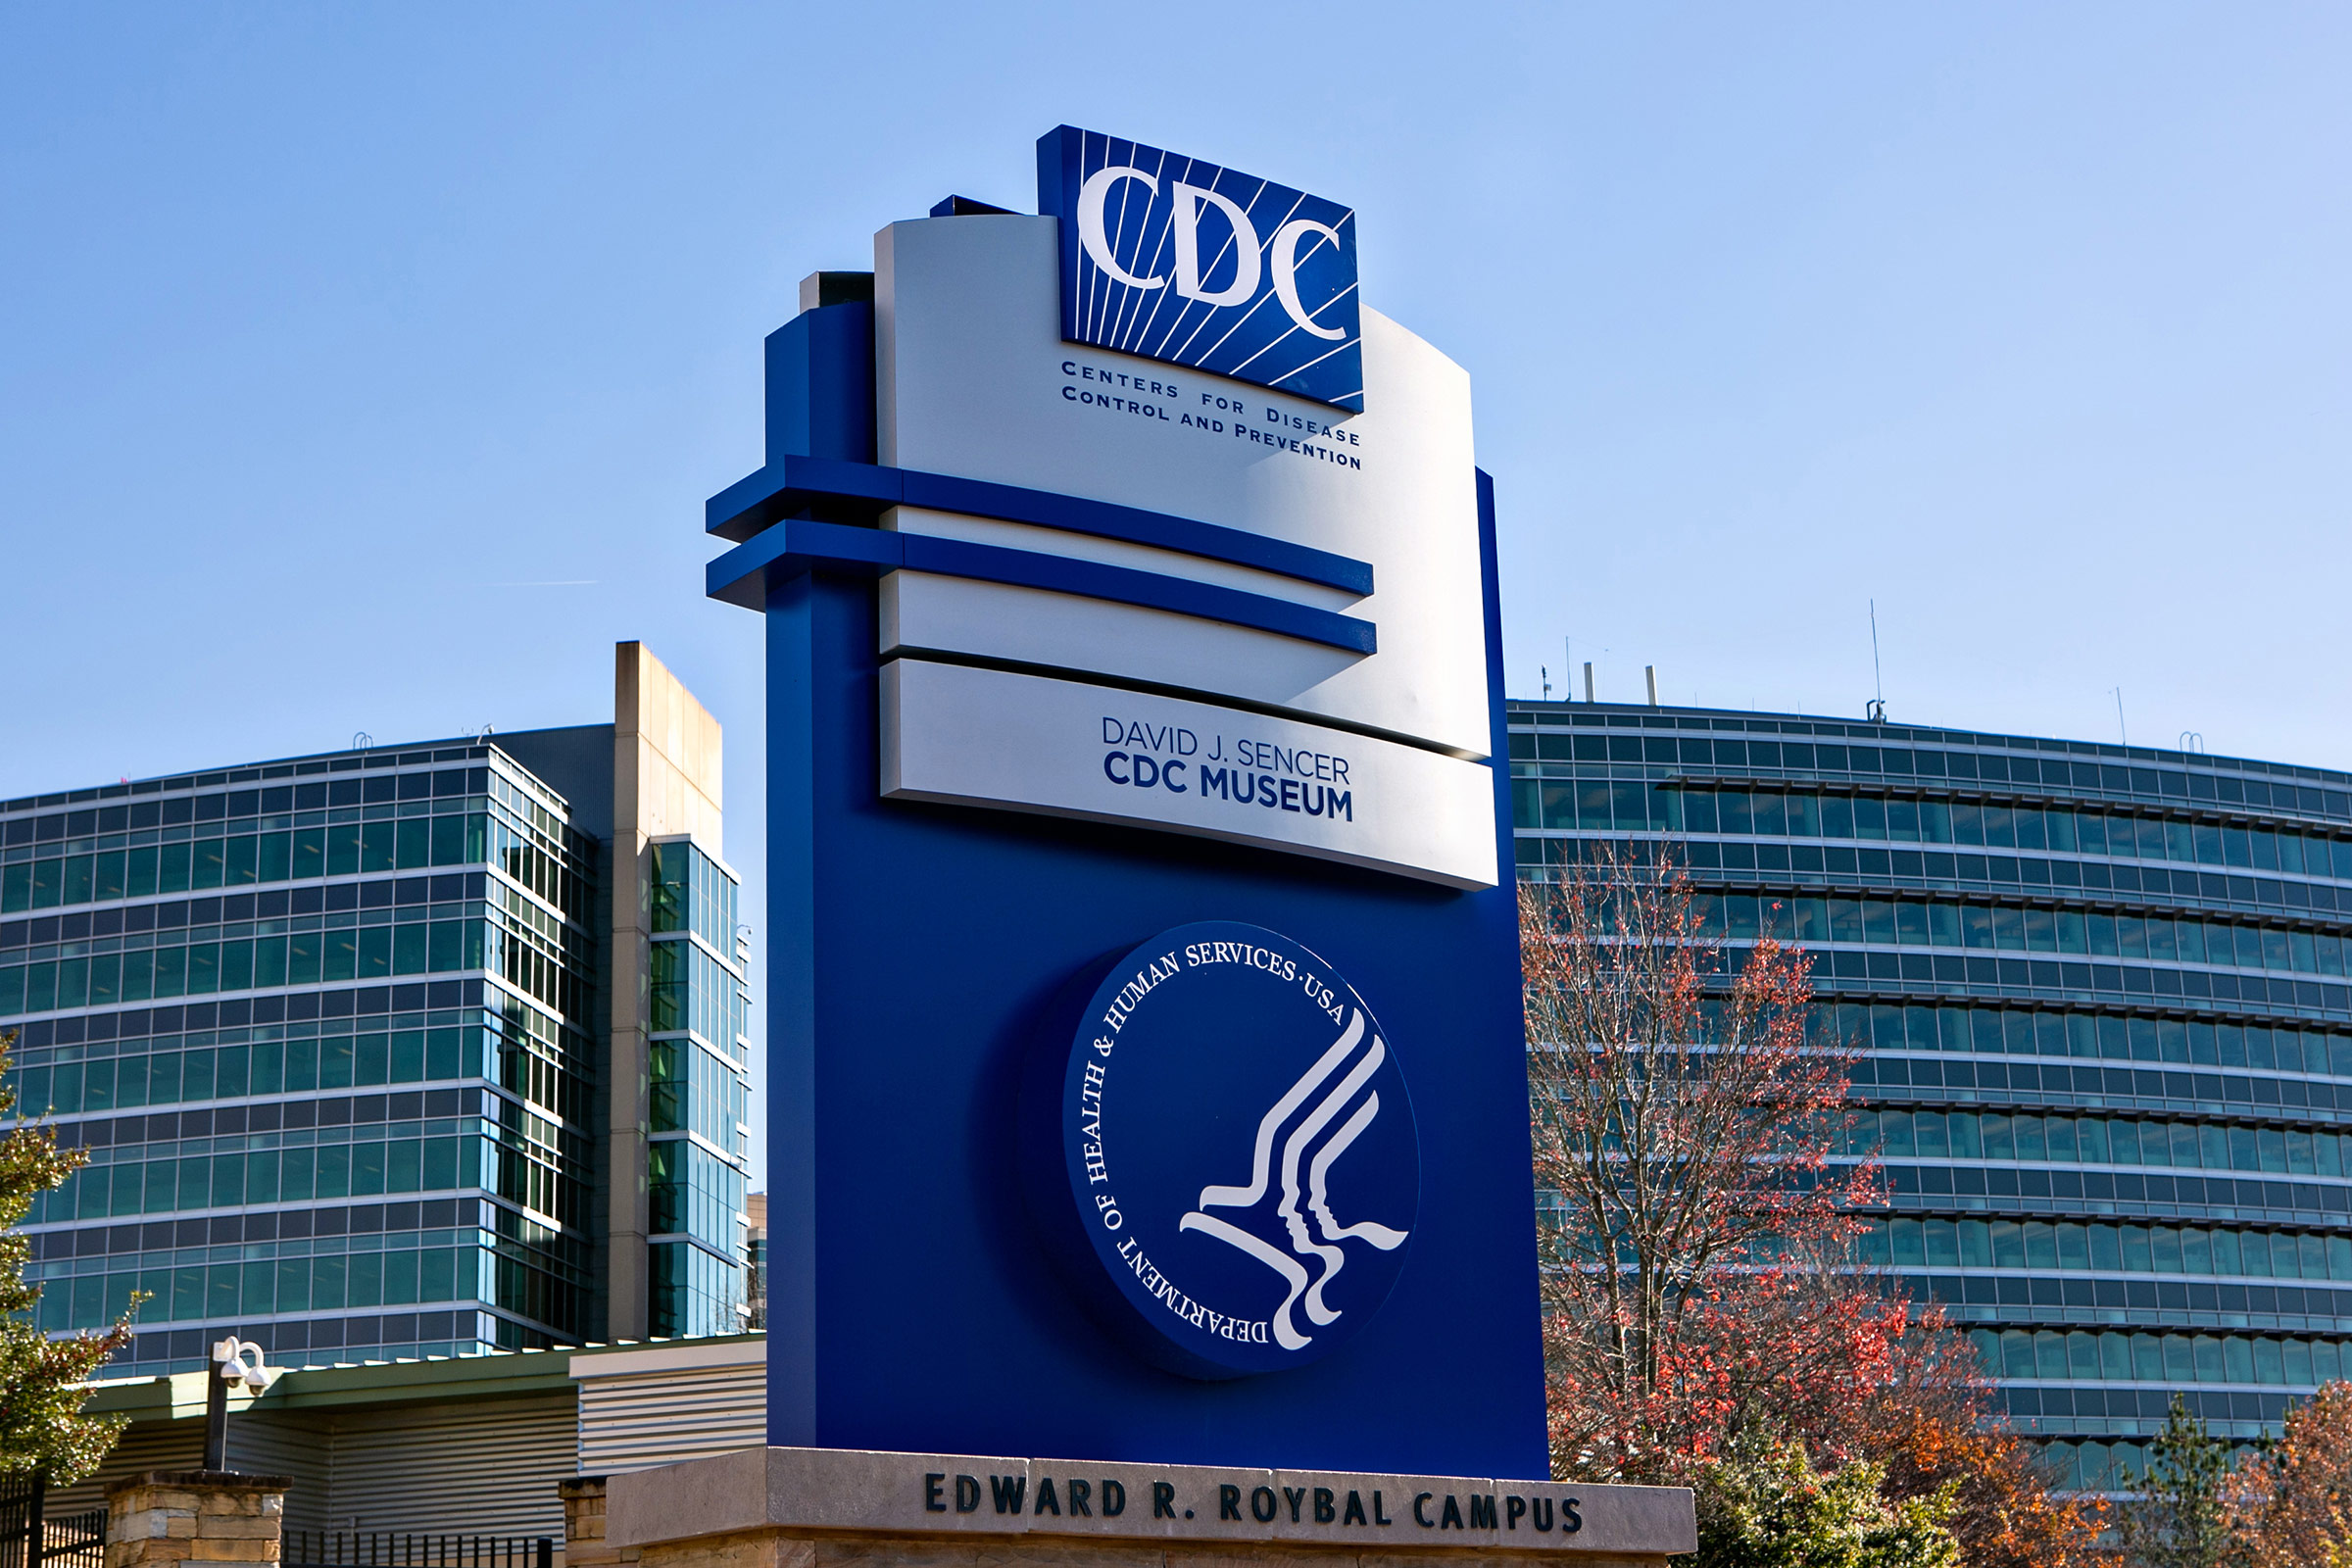 Центр контроля заболеваний. CDC США. Центры по контролю и профилактике заболеваний США. CDC Атланта США. CDC Атланта США фото здания.